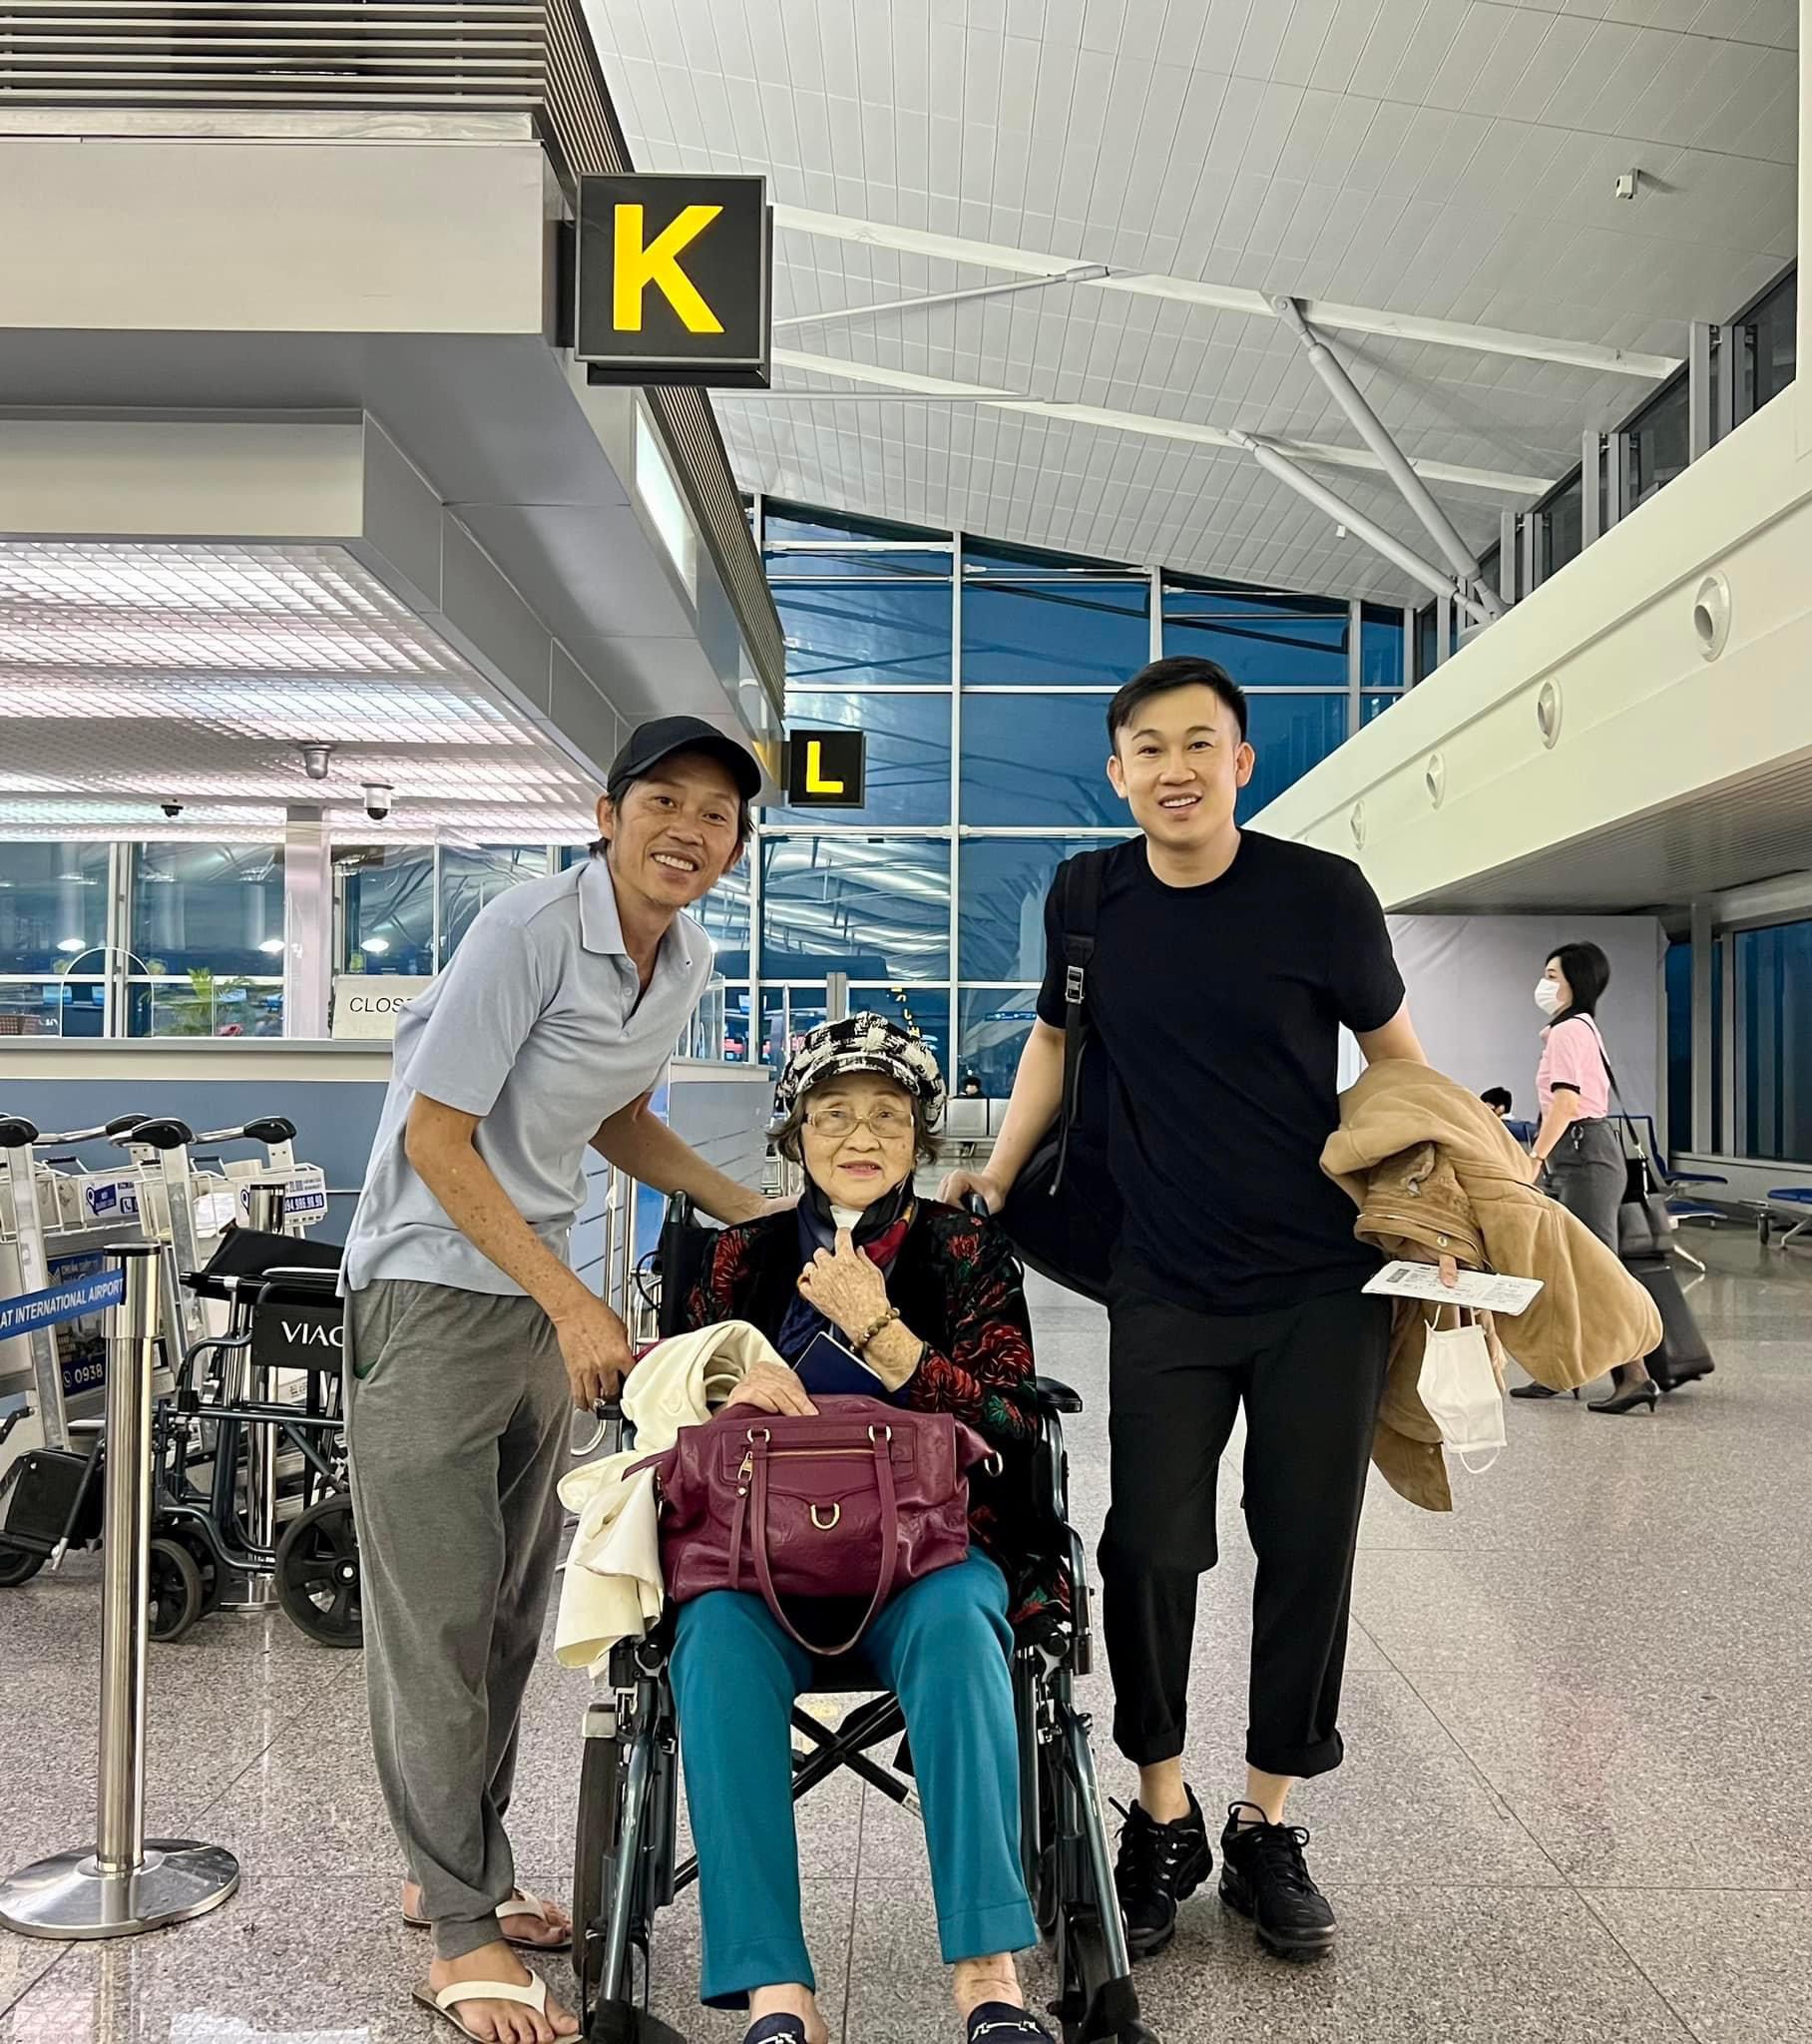 Hoài Linh xuất hiện tại sân bay với hình ảnh gầy rộc, hom hem khó nhận ra - Ảnh 2.